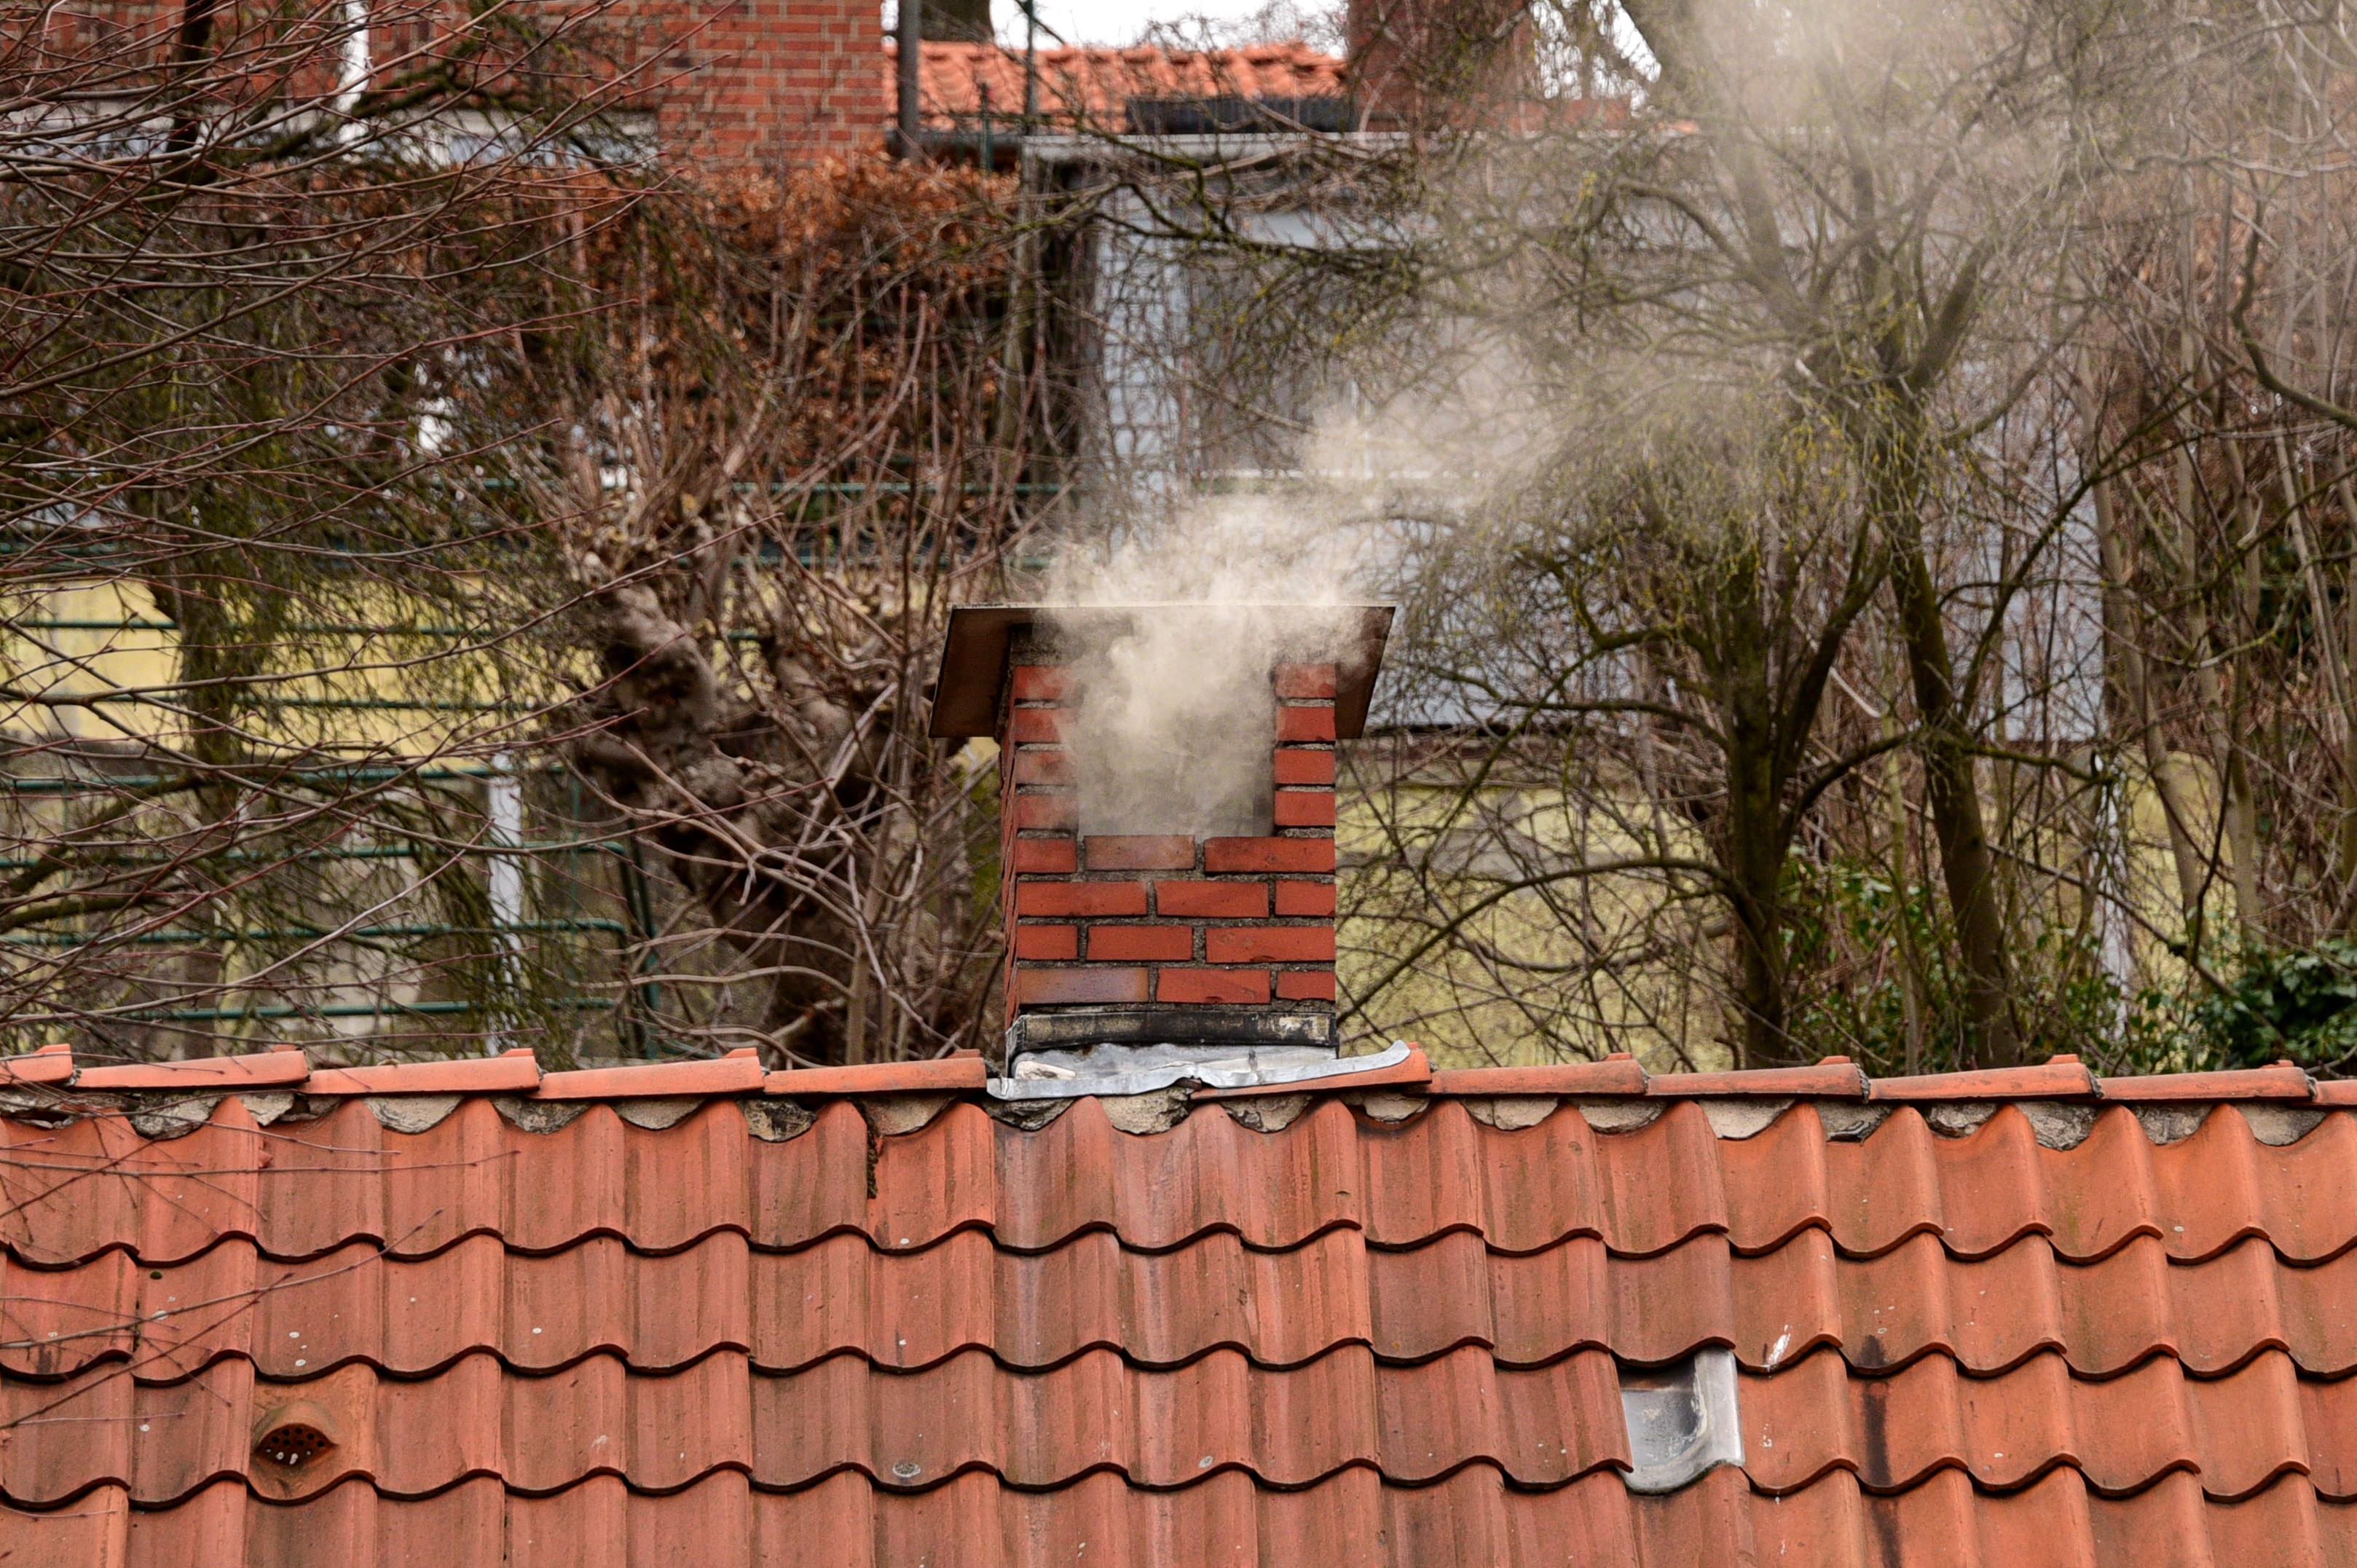 A fatüzelés felel a városi levegőt szennyező rákkeltő anyagok közel feléért